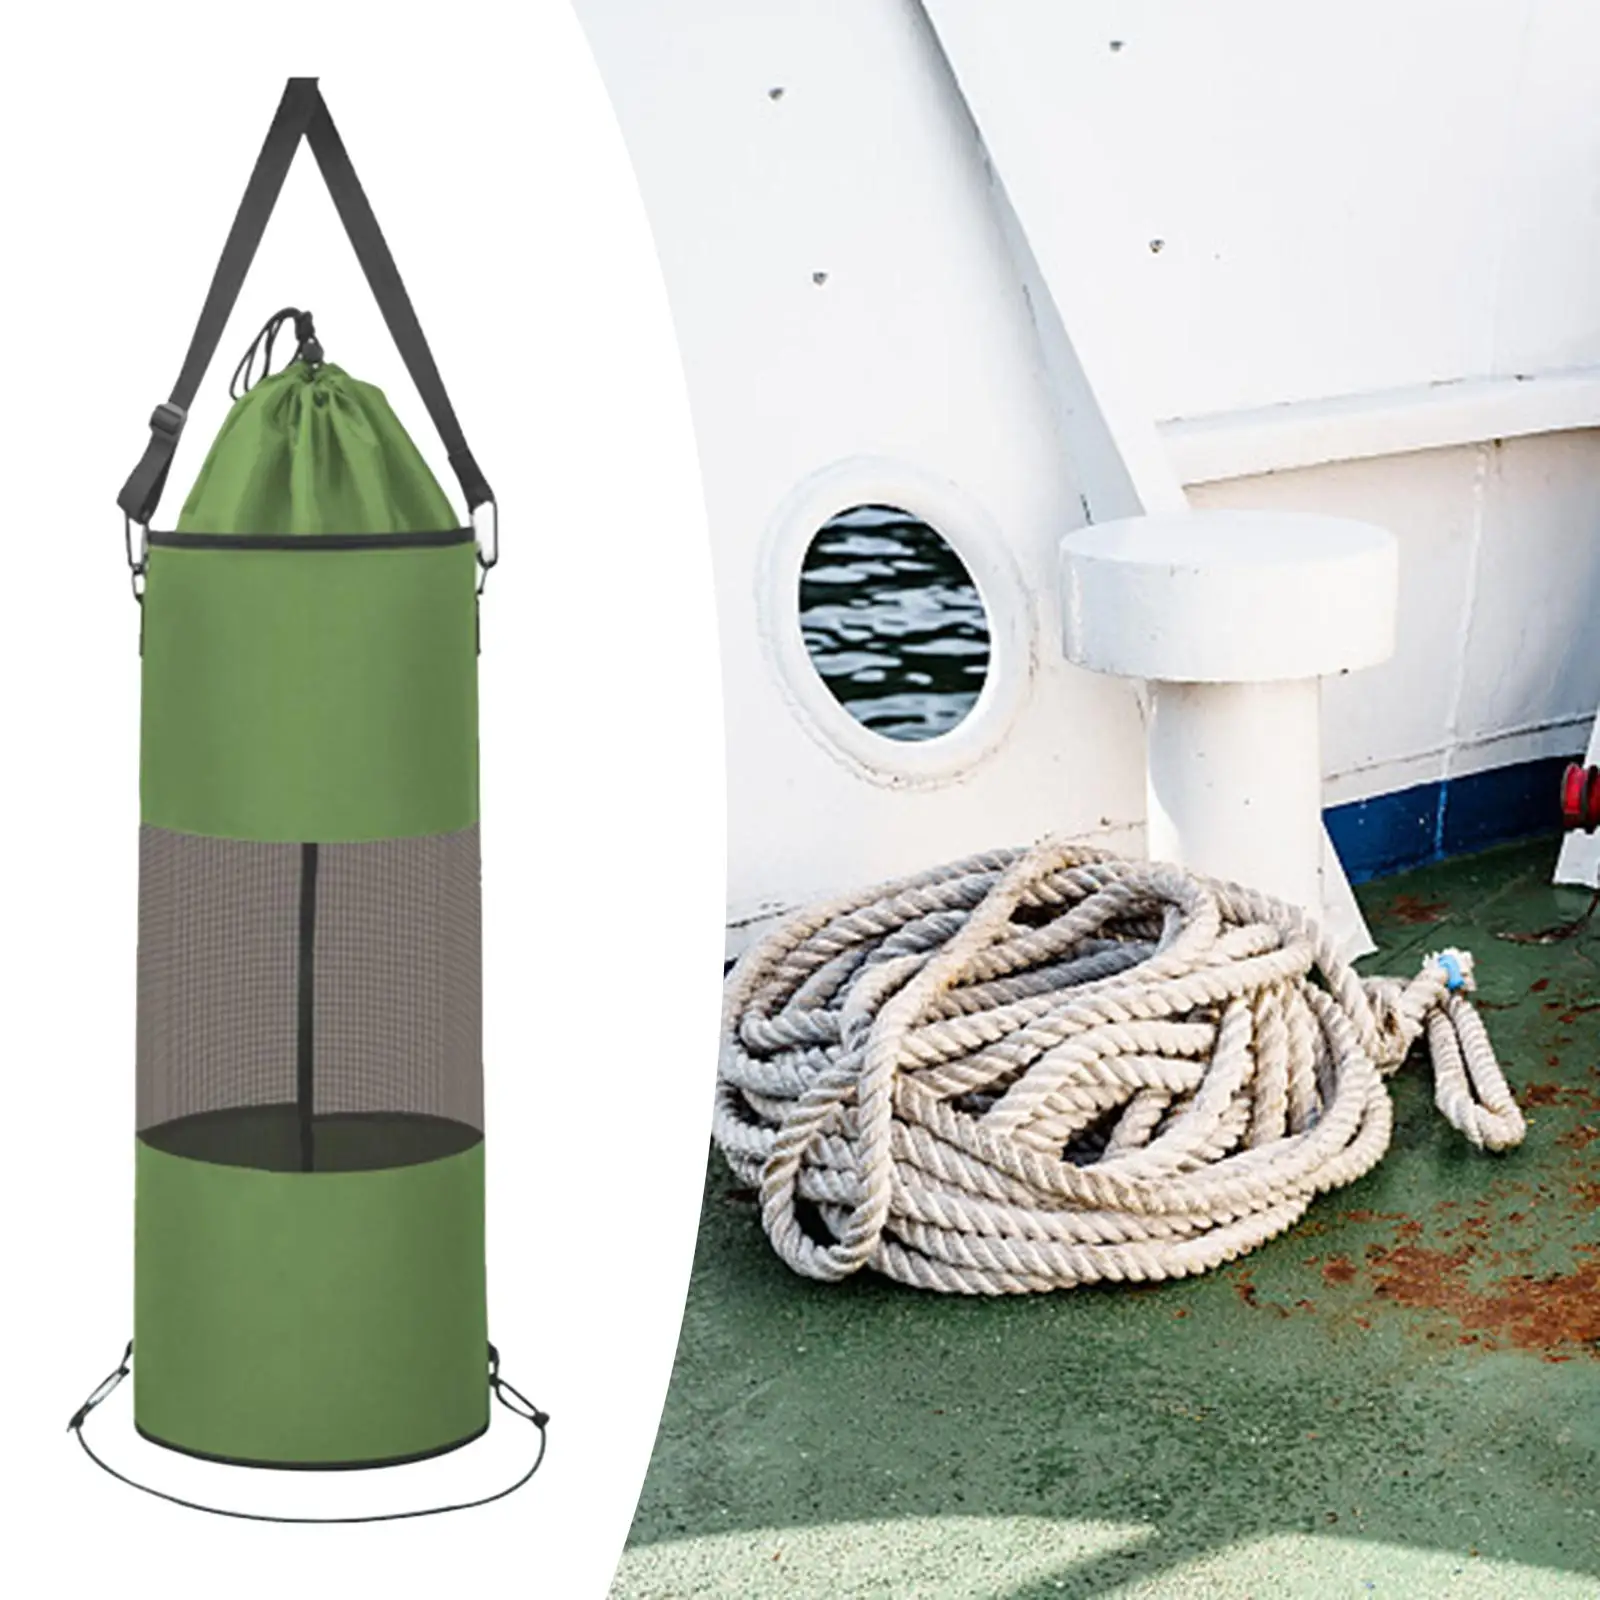 Boat Trash Bag Garbage Holder Lightweight Durable Leakproof Garbage Bag Boat Storage Trash Can for ATV Sandbar Home Kayak Beach